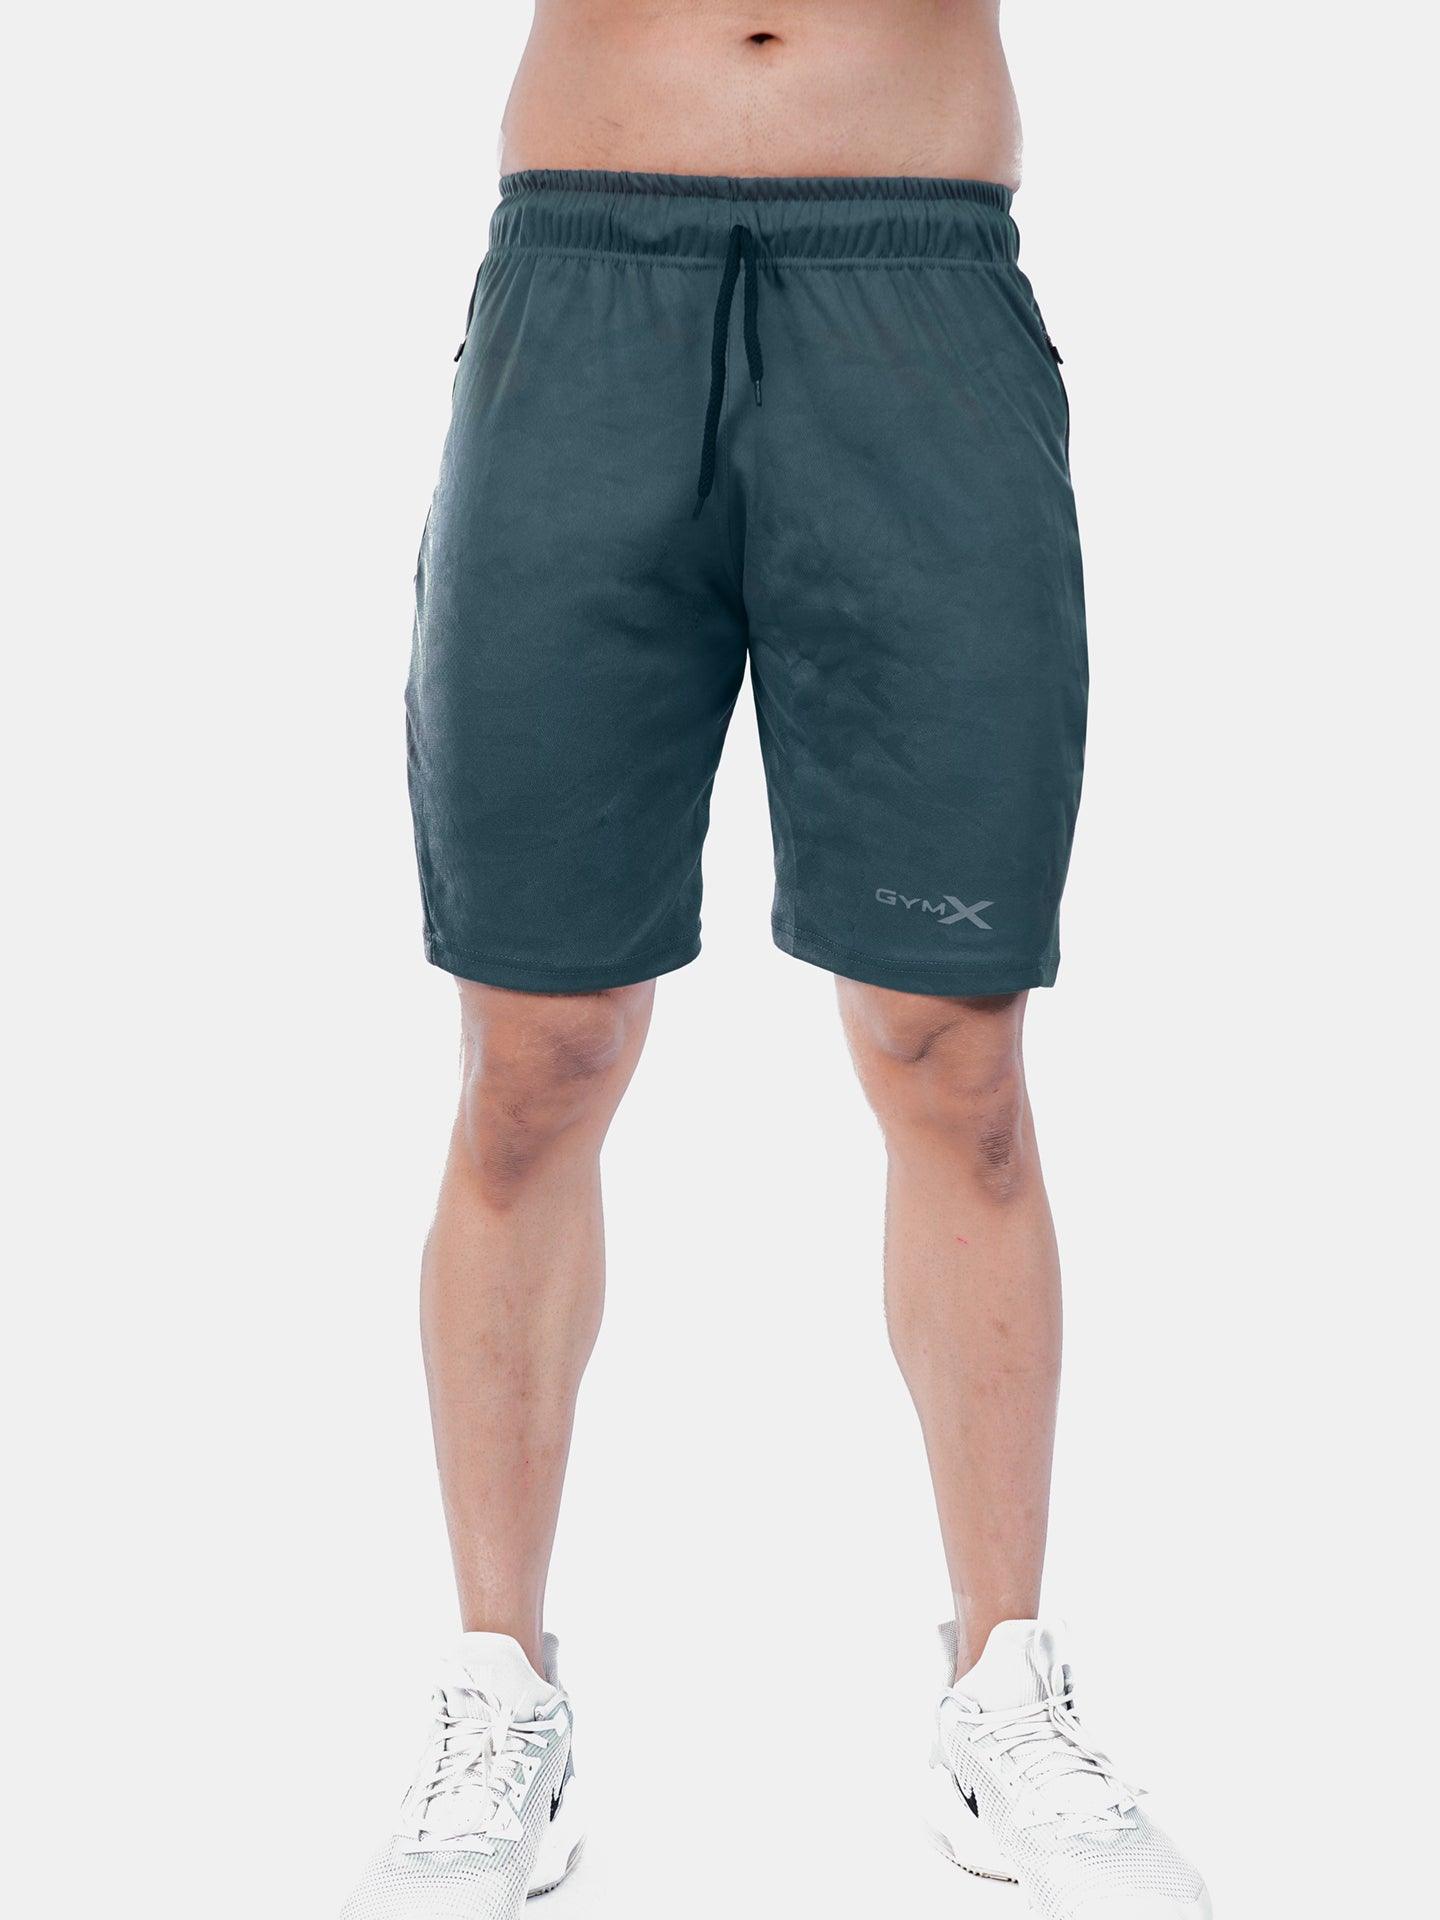 Jacquard Sea Grey Camo GymX Shorts